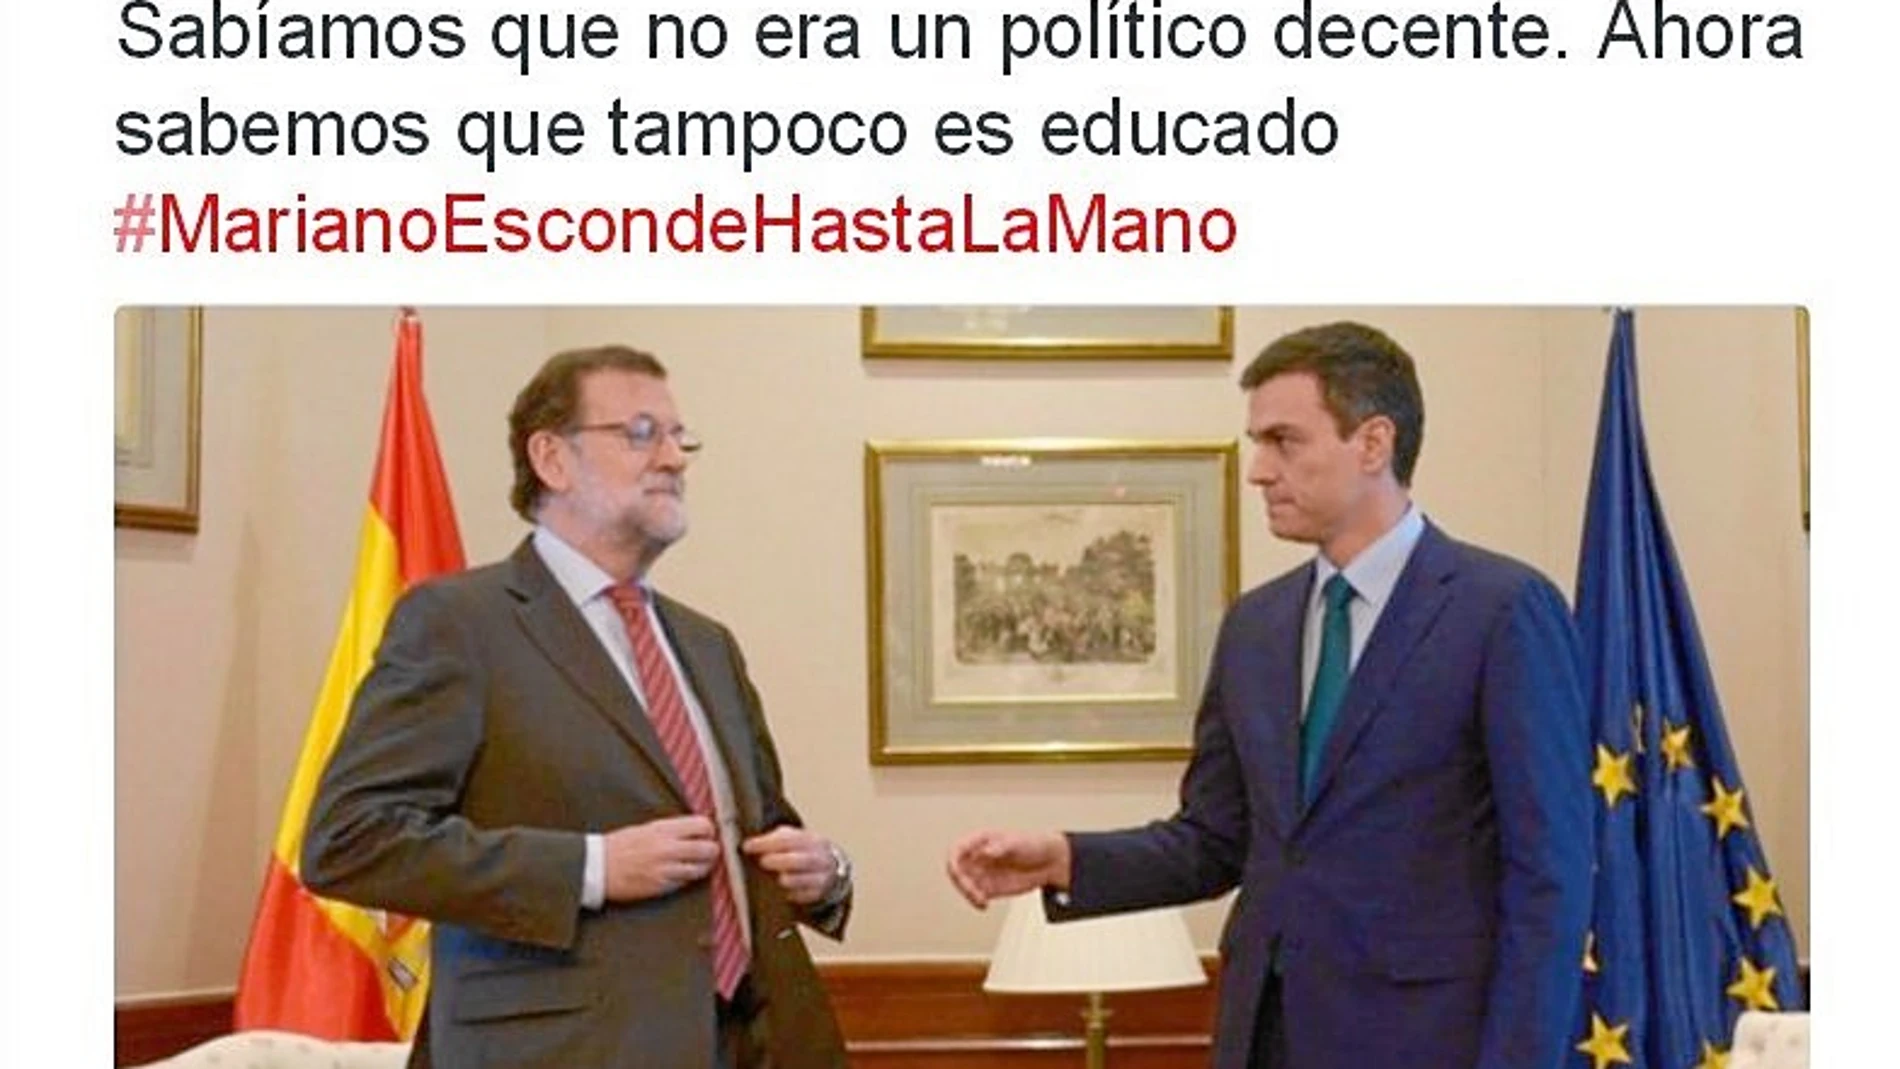 En Twitter el PSOE criticó el gesto de Rajoy: «Sabíamos que no era decente, ahora, además, maleducado».